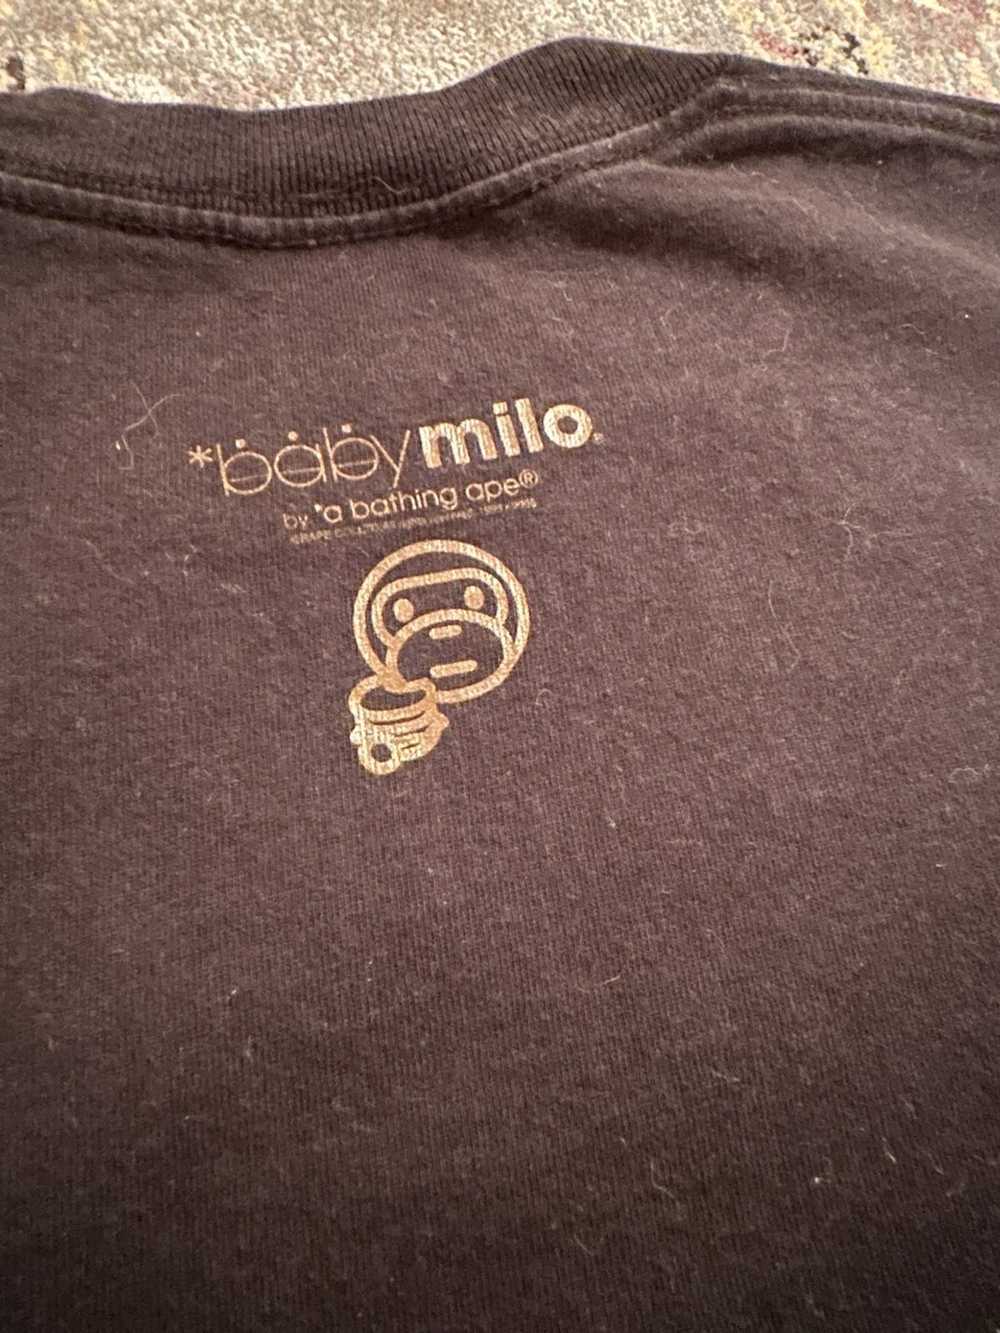 Bape Nigo era baby milo T-Shirt - image 7